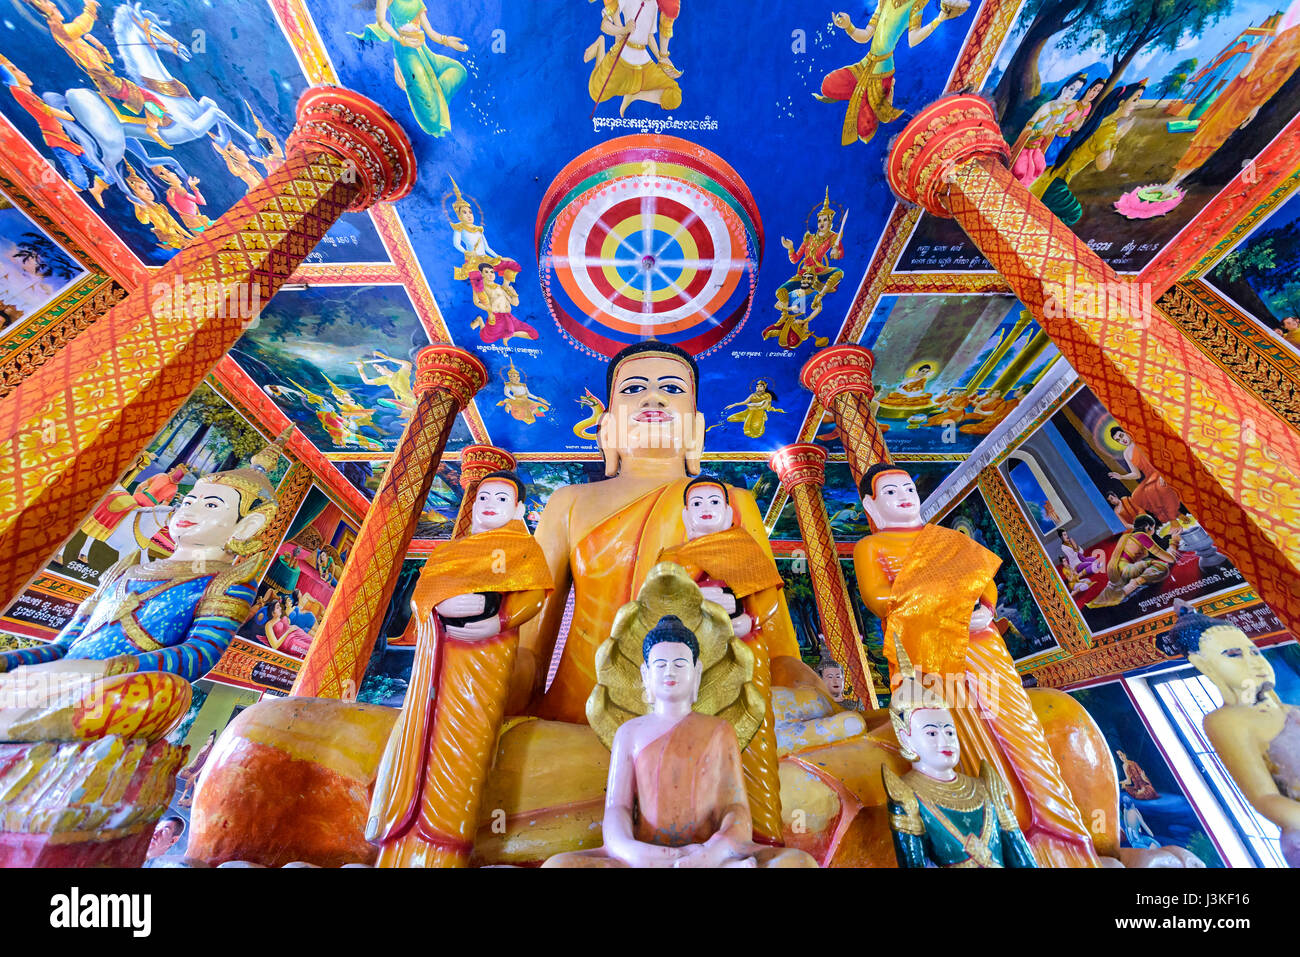 Lolei, Cambodge - 4 janvier, 2017 : Avis de Wat temple Lolei intérieur. Wat lolei est un temple bouddhiste et un monastère construit à proximité d'un site Khmer historiques Banque D'Images